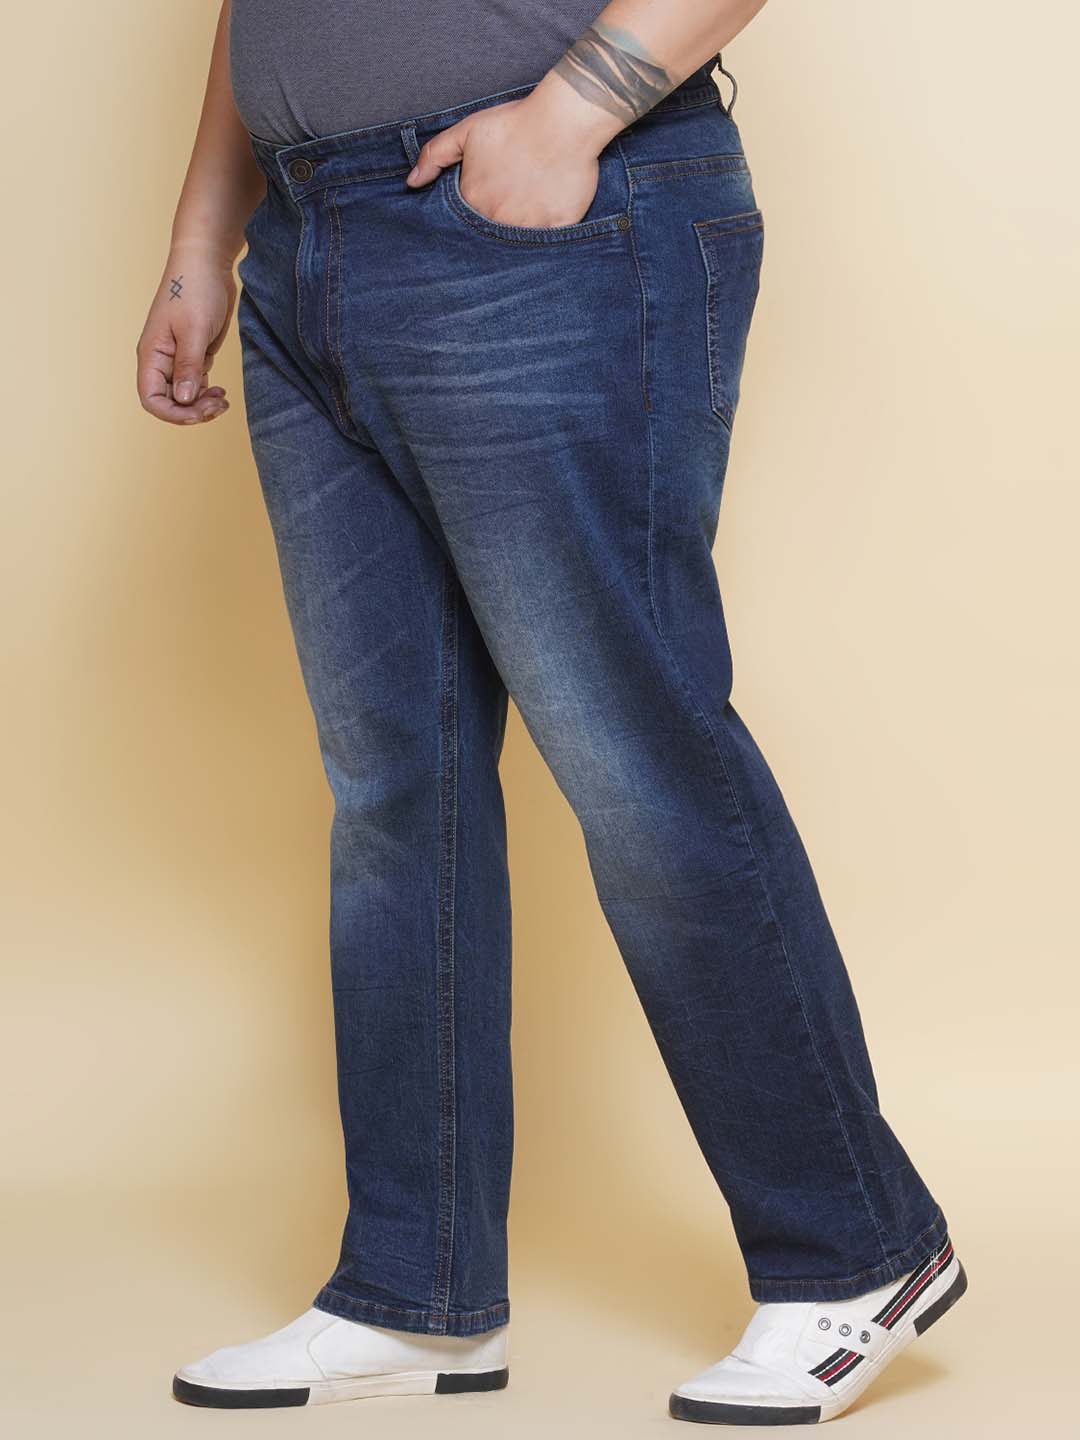 bottomwear/jeans/JPJ27096/jpj27096-4.jpg